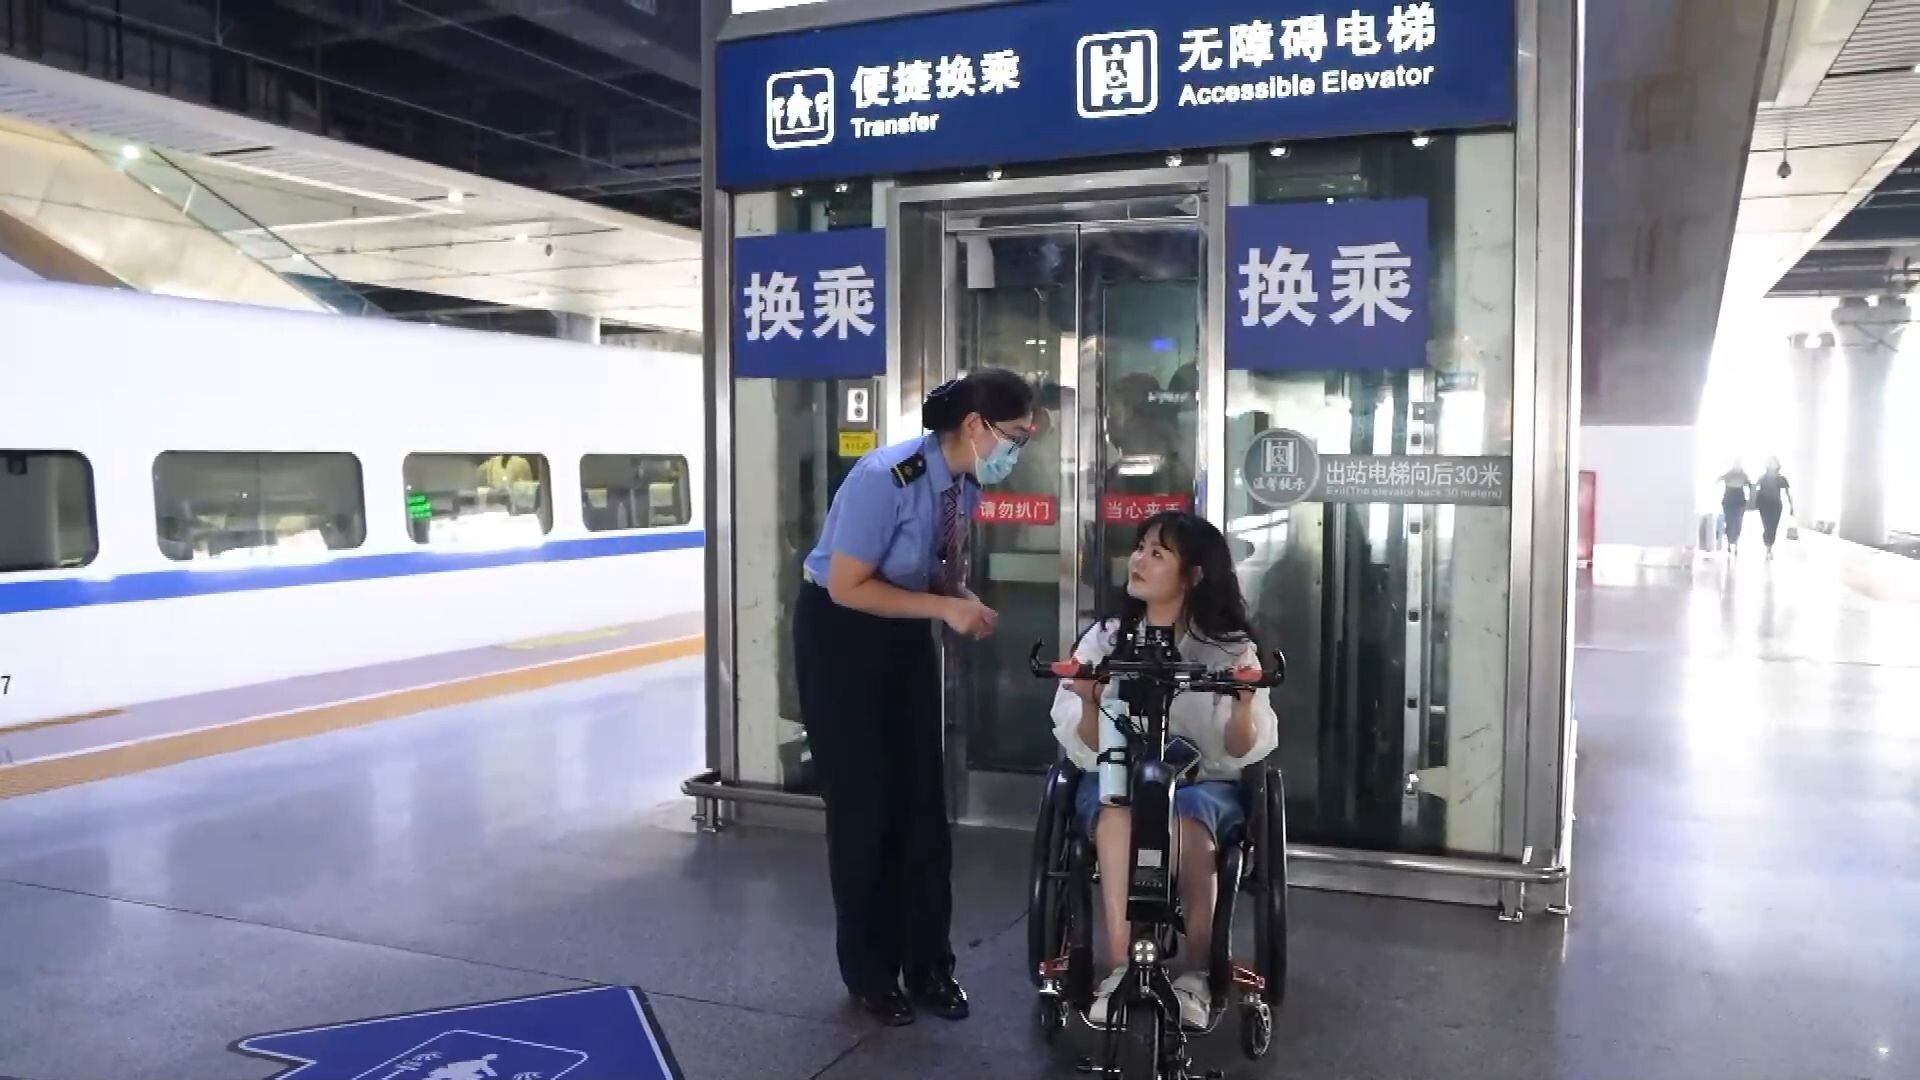 สัมผัสประสบการณ์ นั่งรถเข็นขึ้นรถไฟเร็วสูงที่จีน